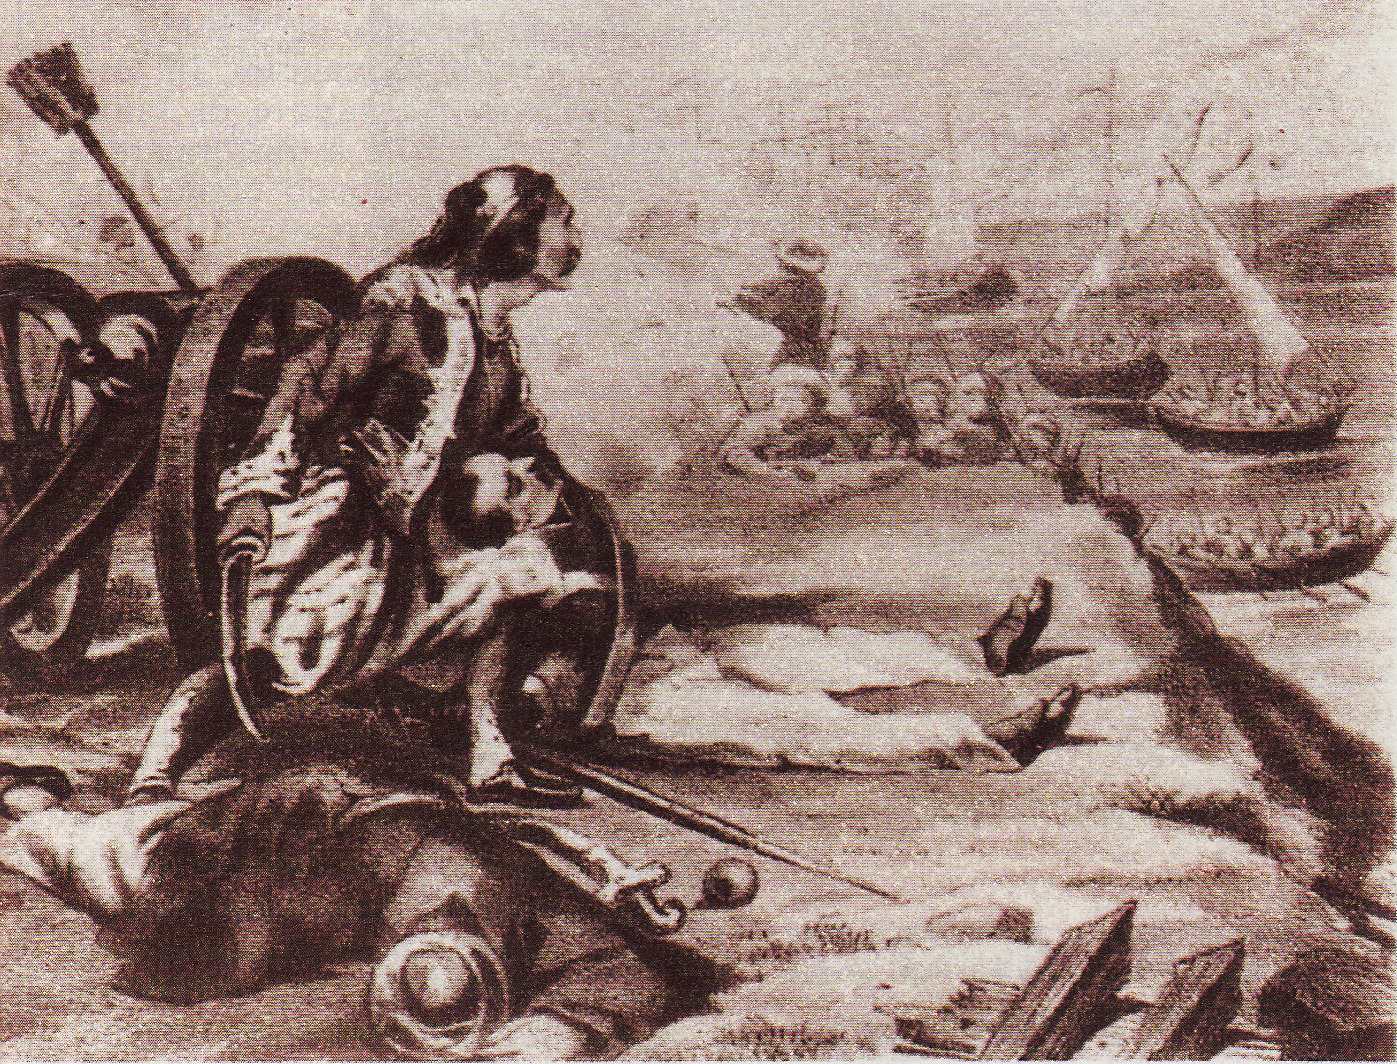 Santorre di Santa Rosa muore durante la battaglia di Sfacteria per la libert della Grecia il 9 maggio 1825. La sua morte sar vendicata solo 2 anni pi tardi durante la battaglia di Navarino 